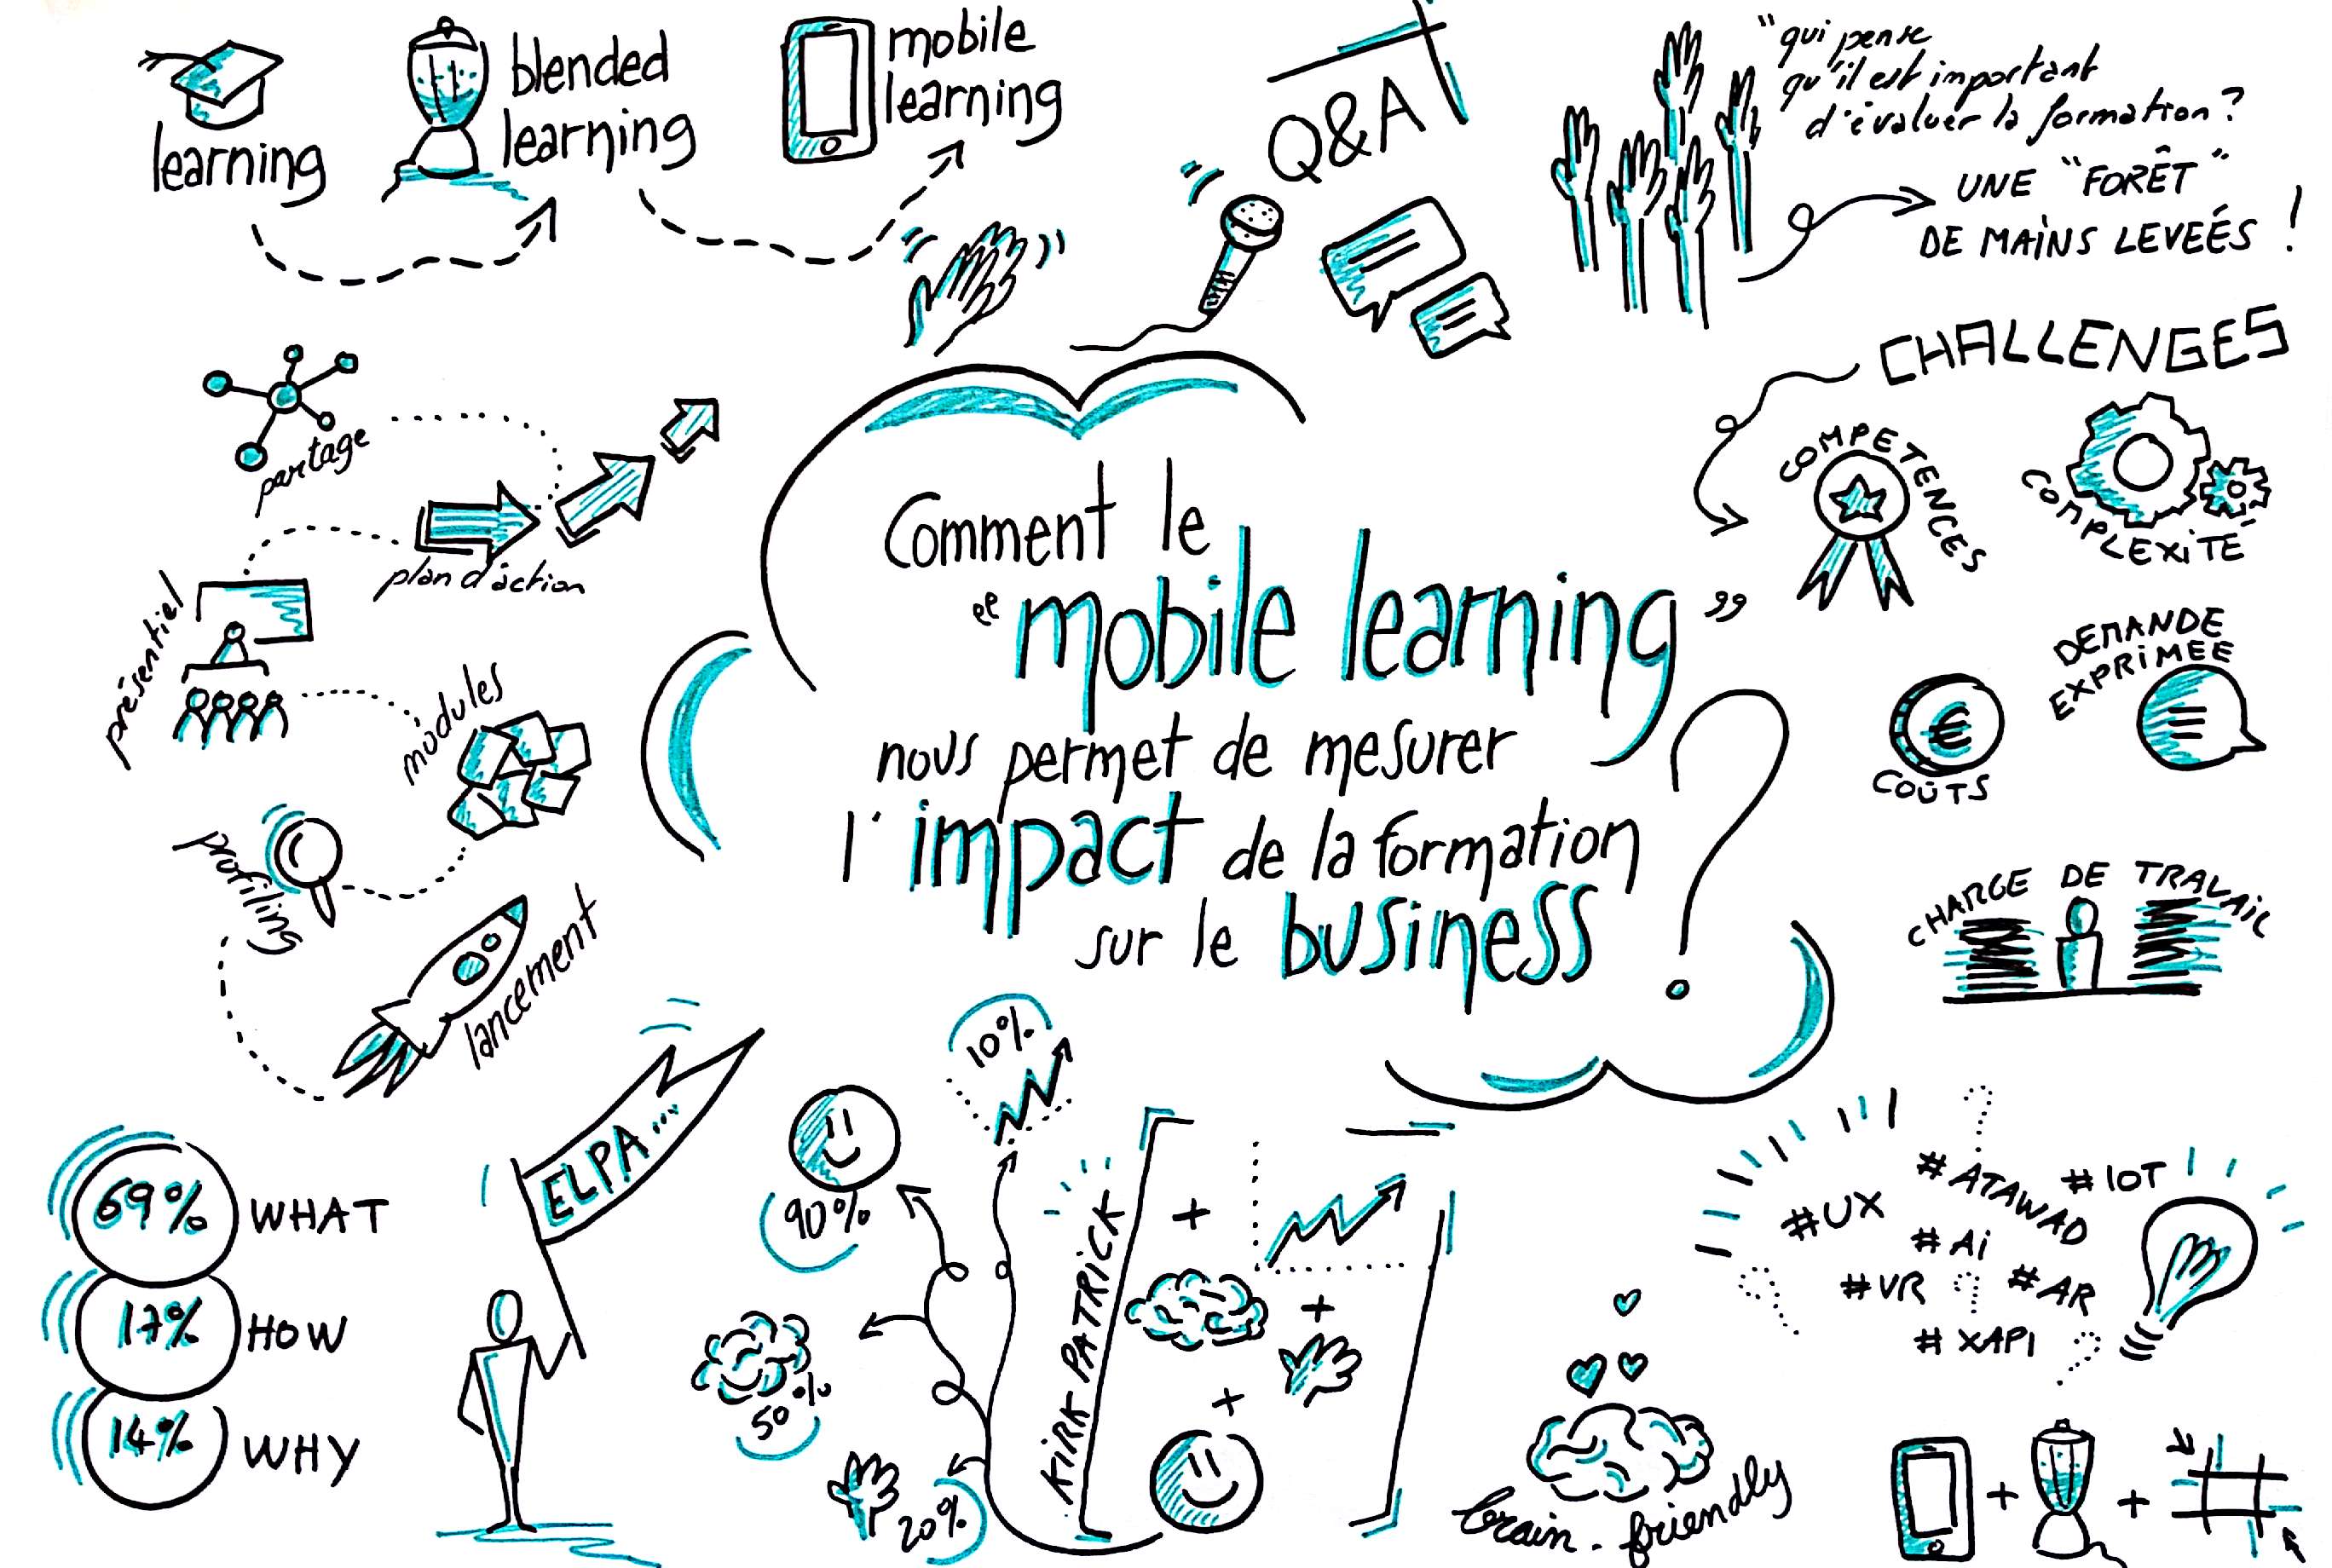 Sketchote de la conférence de Jérôme Wargnier, sur l'impact de la formation sur le business de l'entreprise